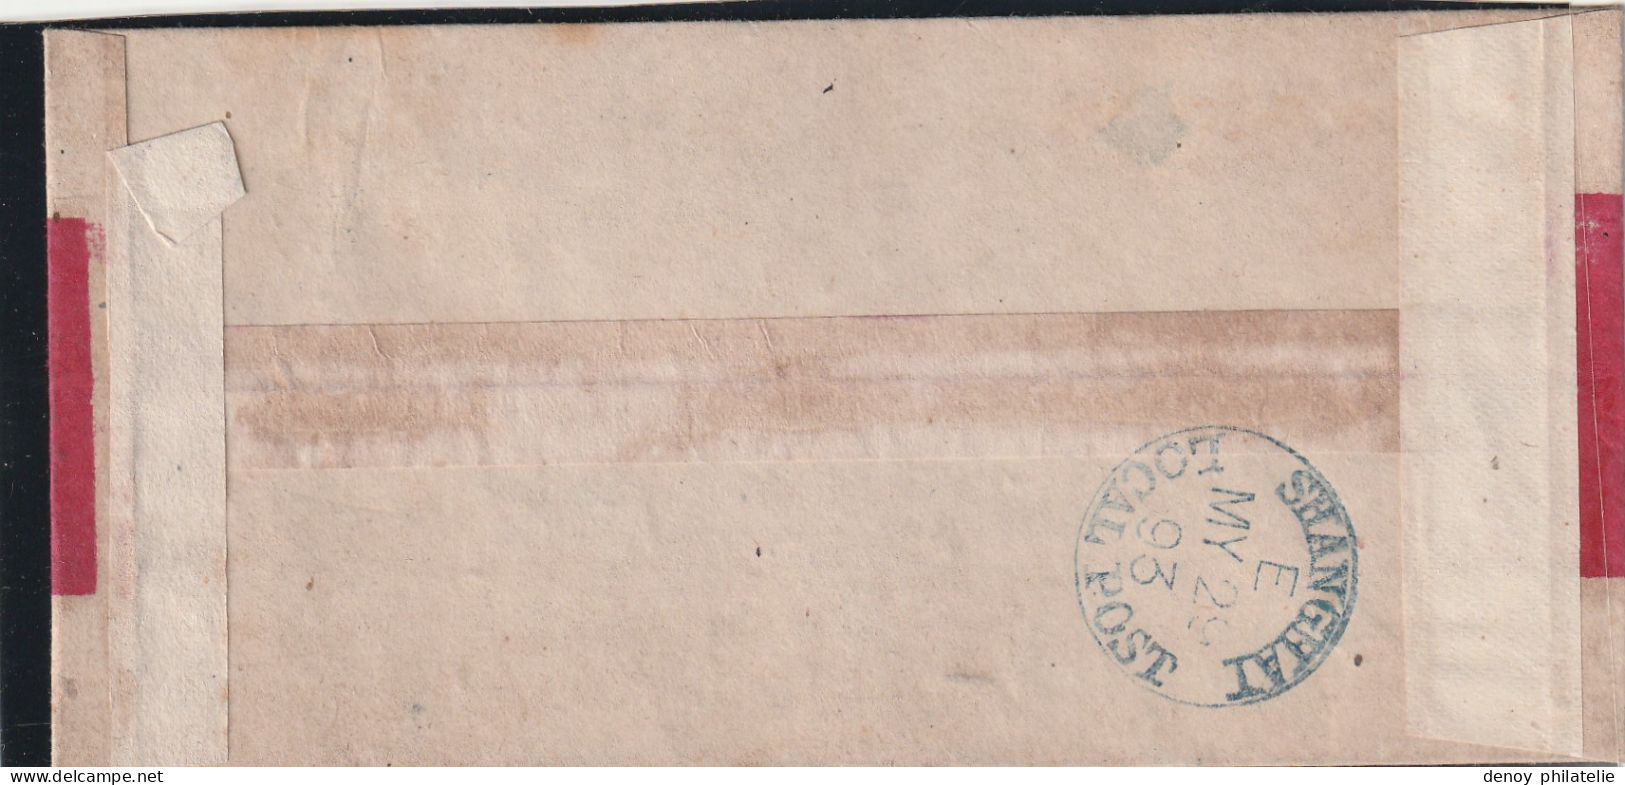 Lettre De Shanghai Poste Locale Avec Cachet D Arrivée Mai 1893 - Briefe U. Dokumente